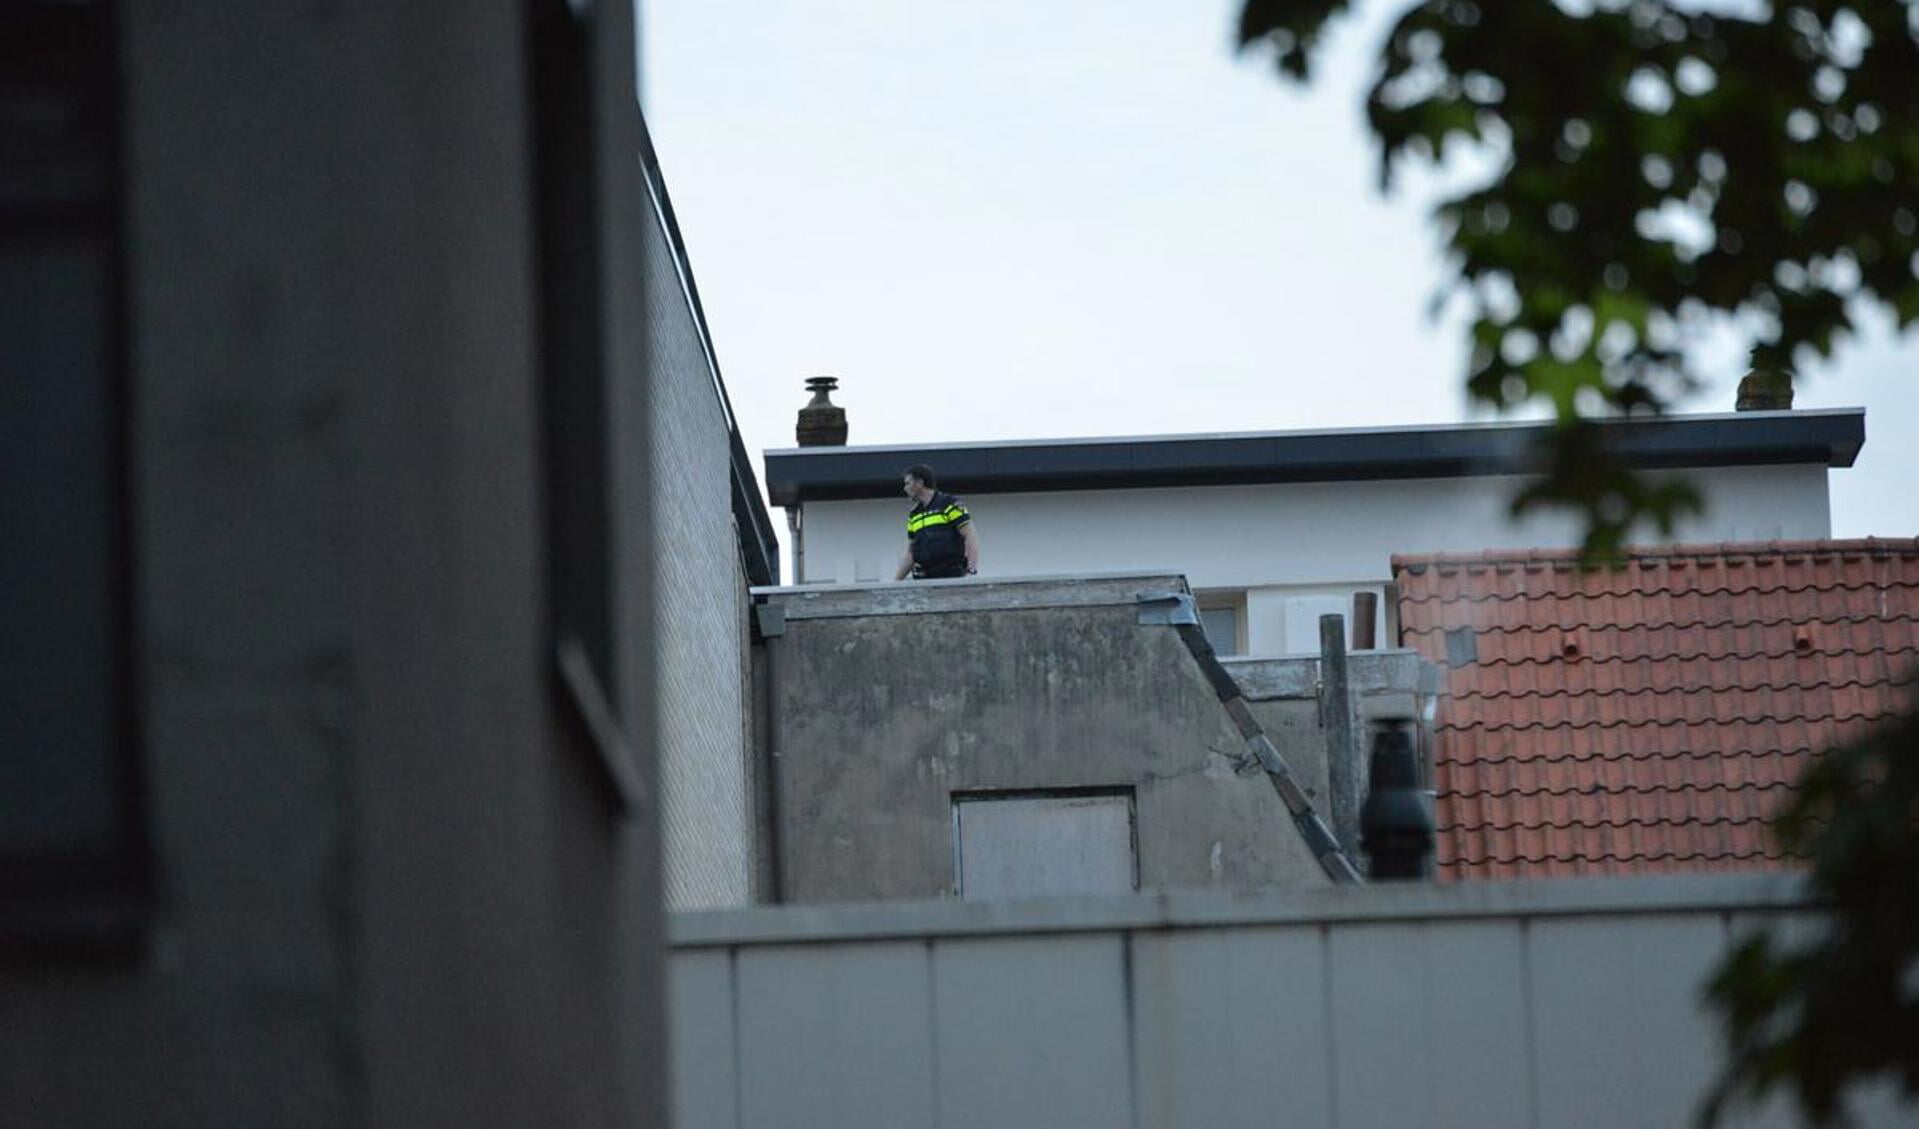 Twee mannen werden dinsdag 12 mei van het dak geplukt.